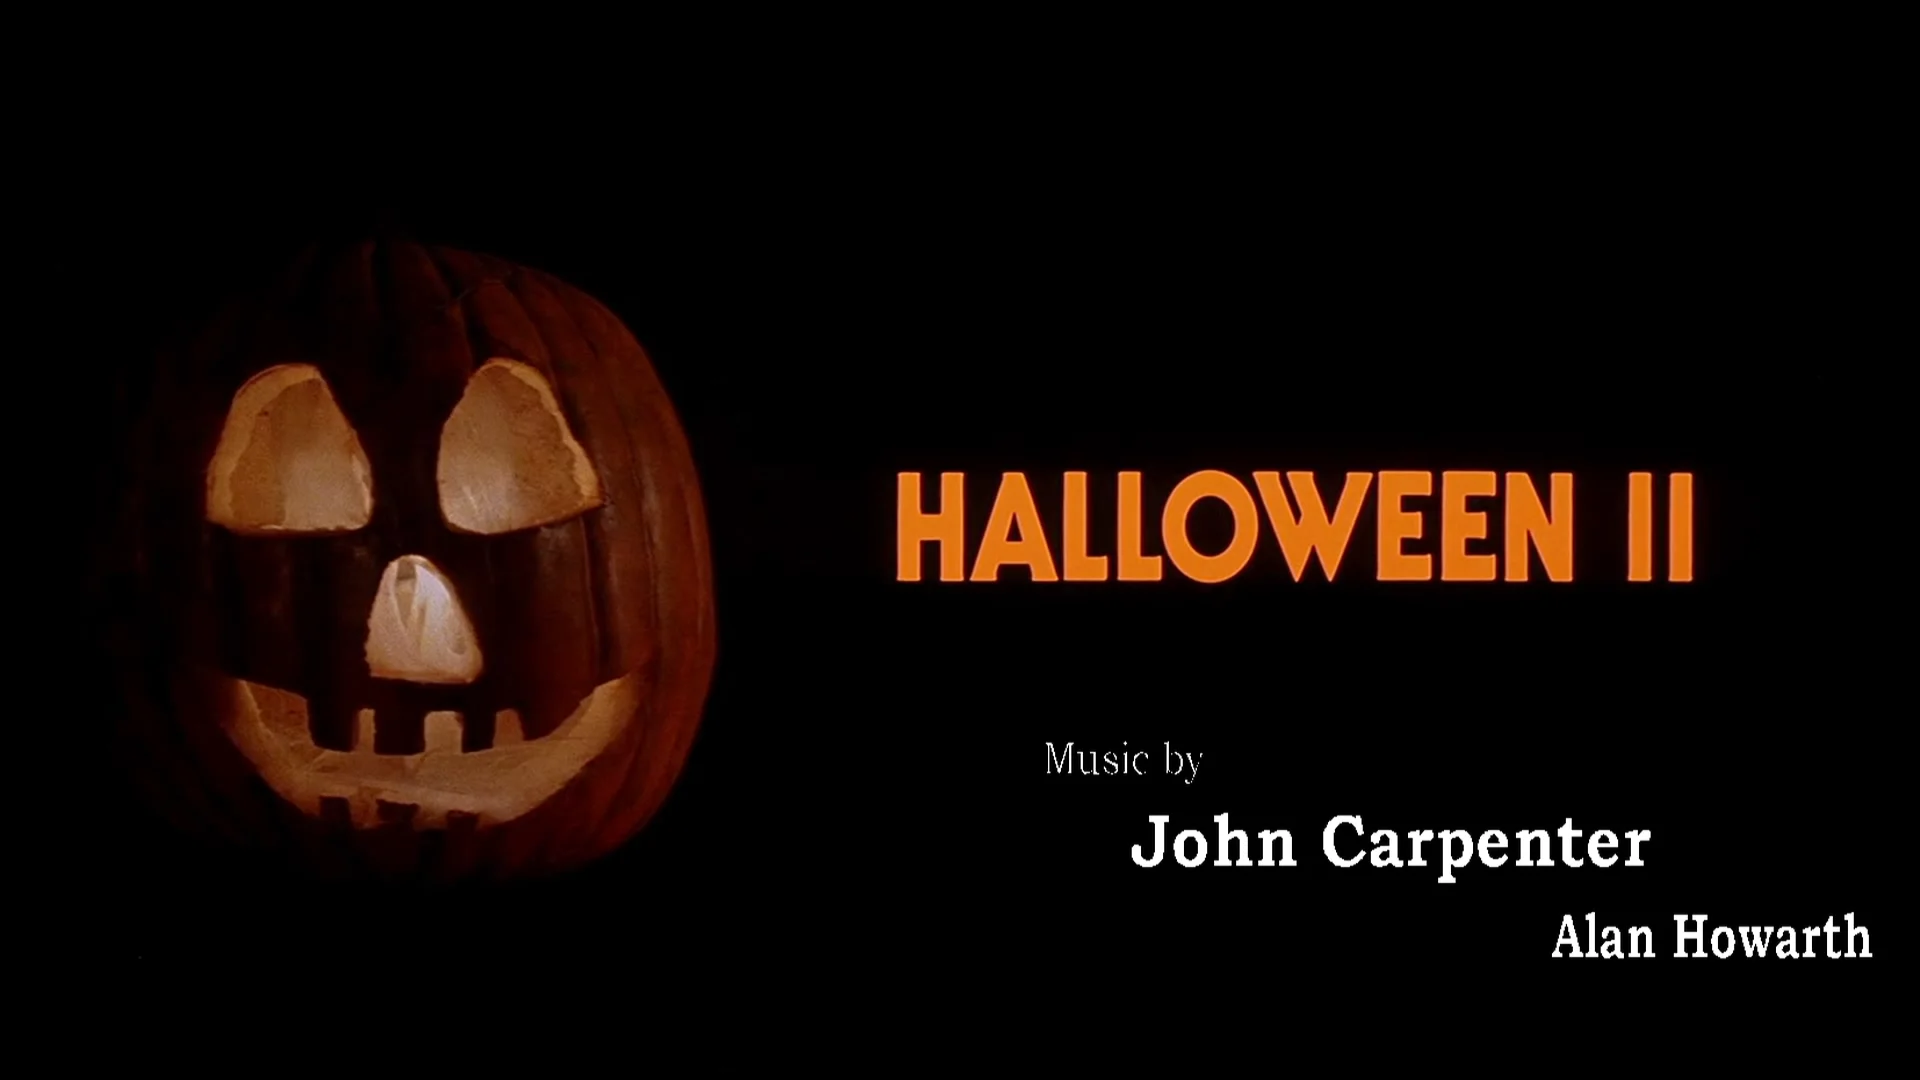 john carpenter halloween pumpkin